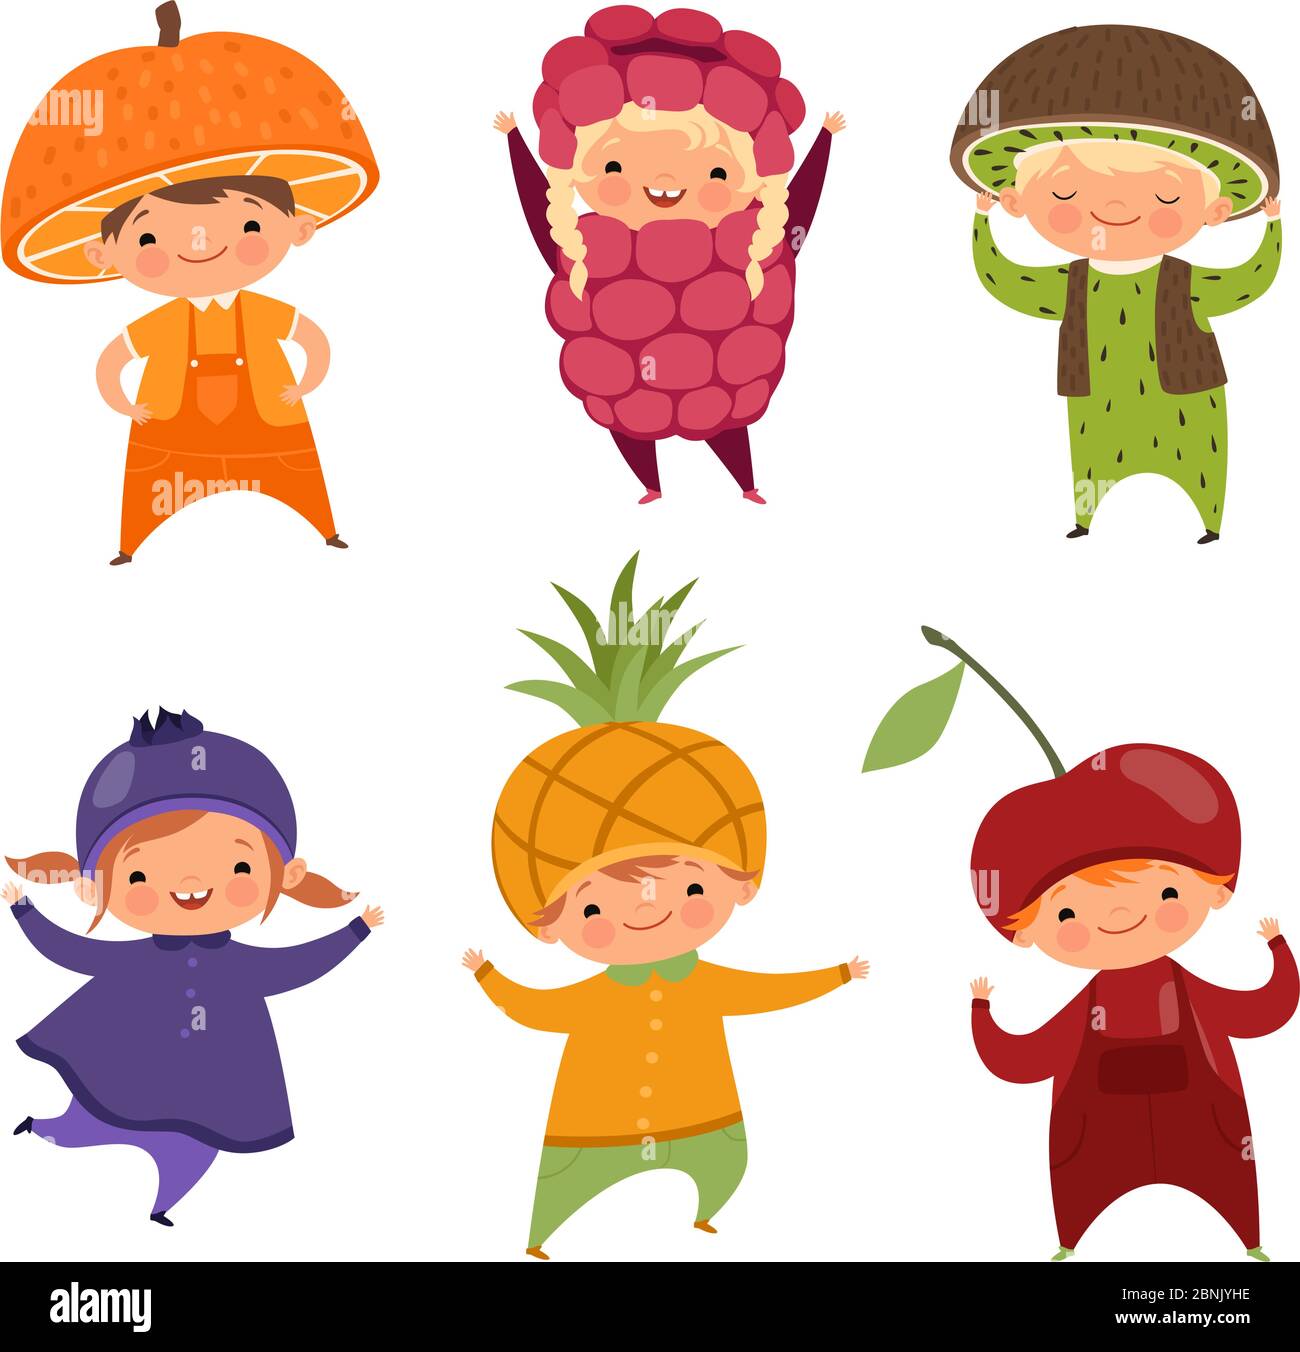 Kinder in Obstkostümen. Vektorbilder von verschiedenen lustigen Kleidung für Kinder Stock Vektor